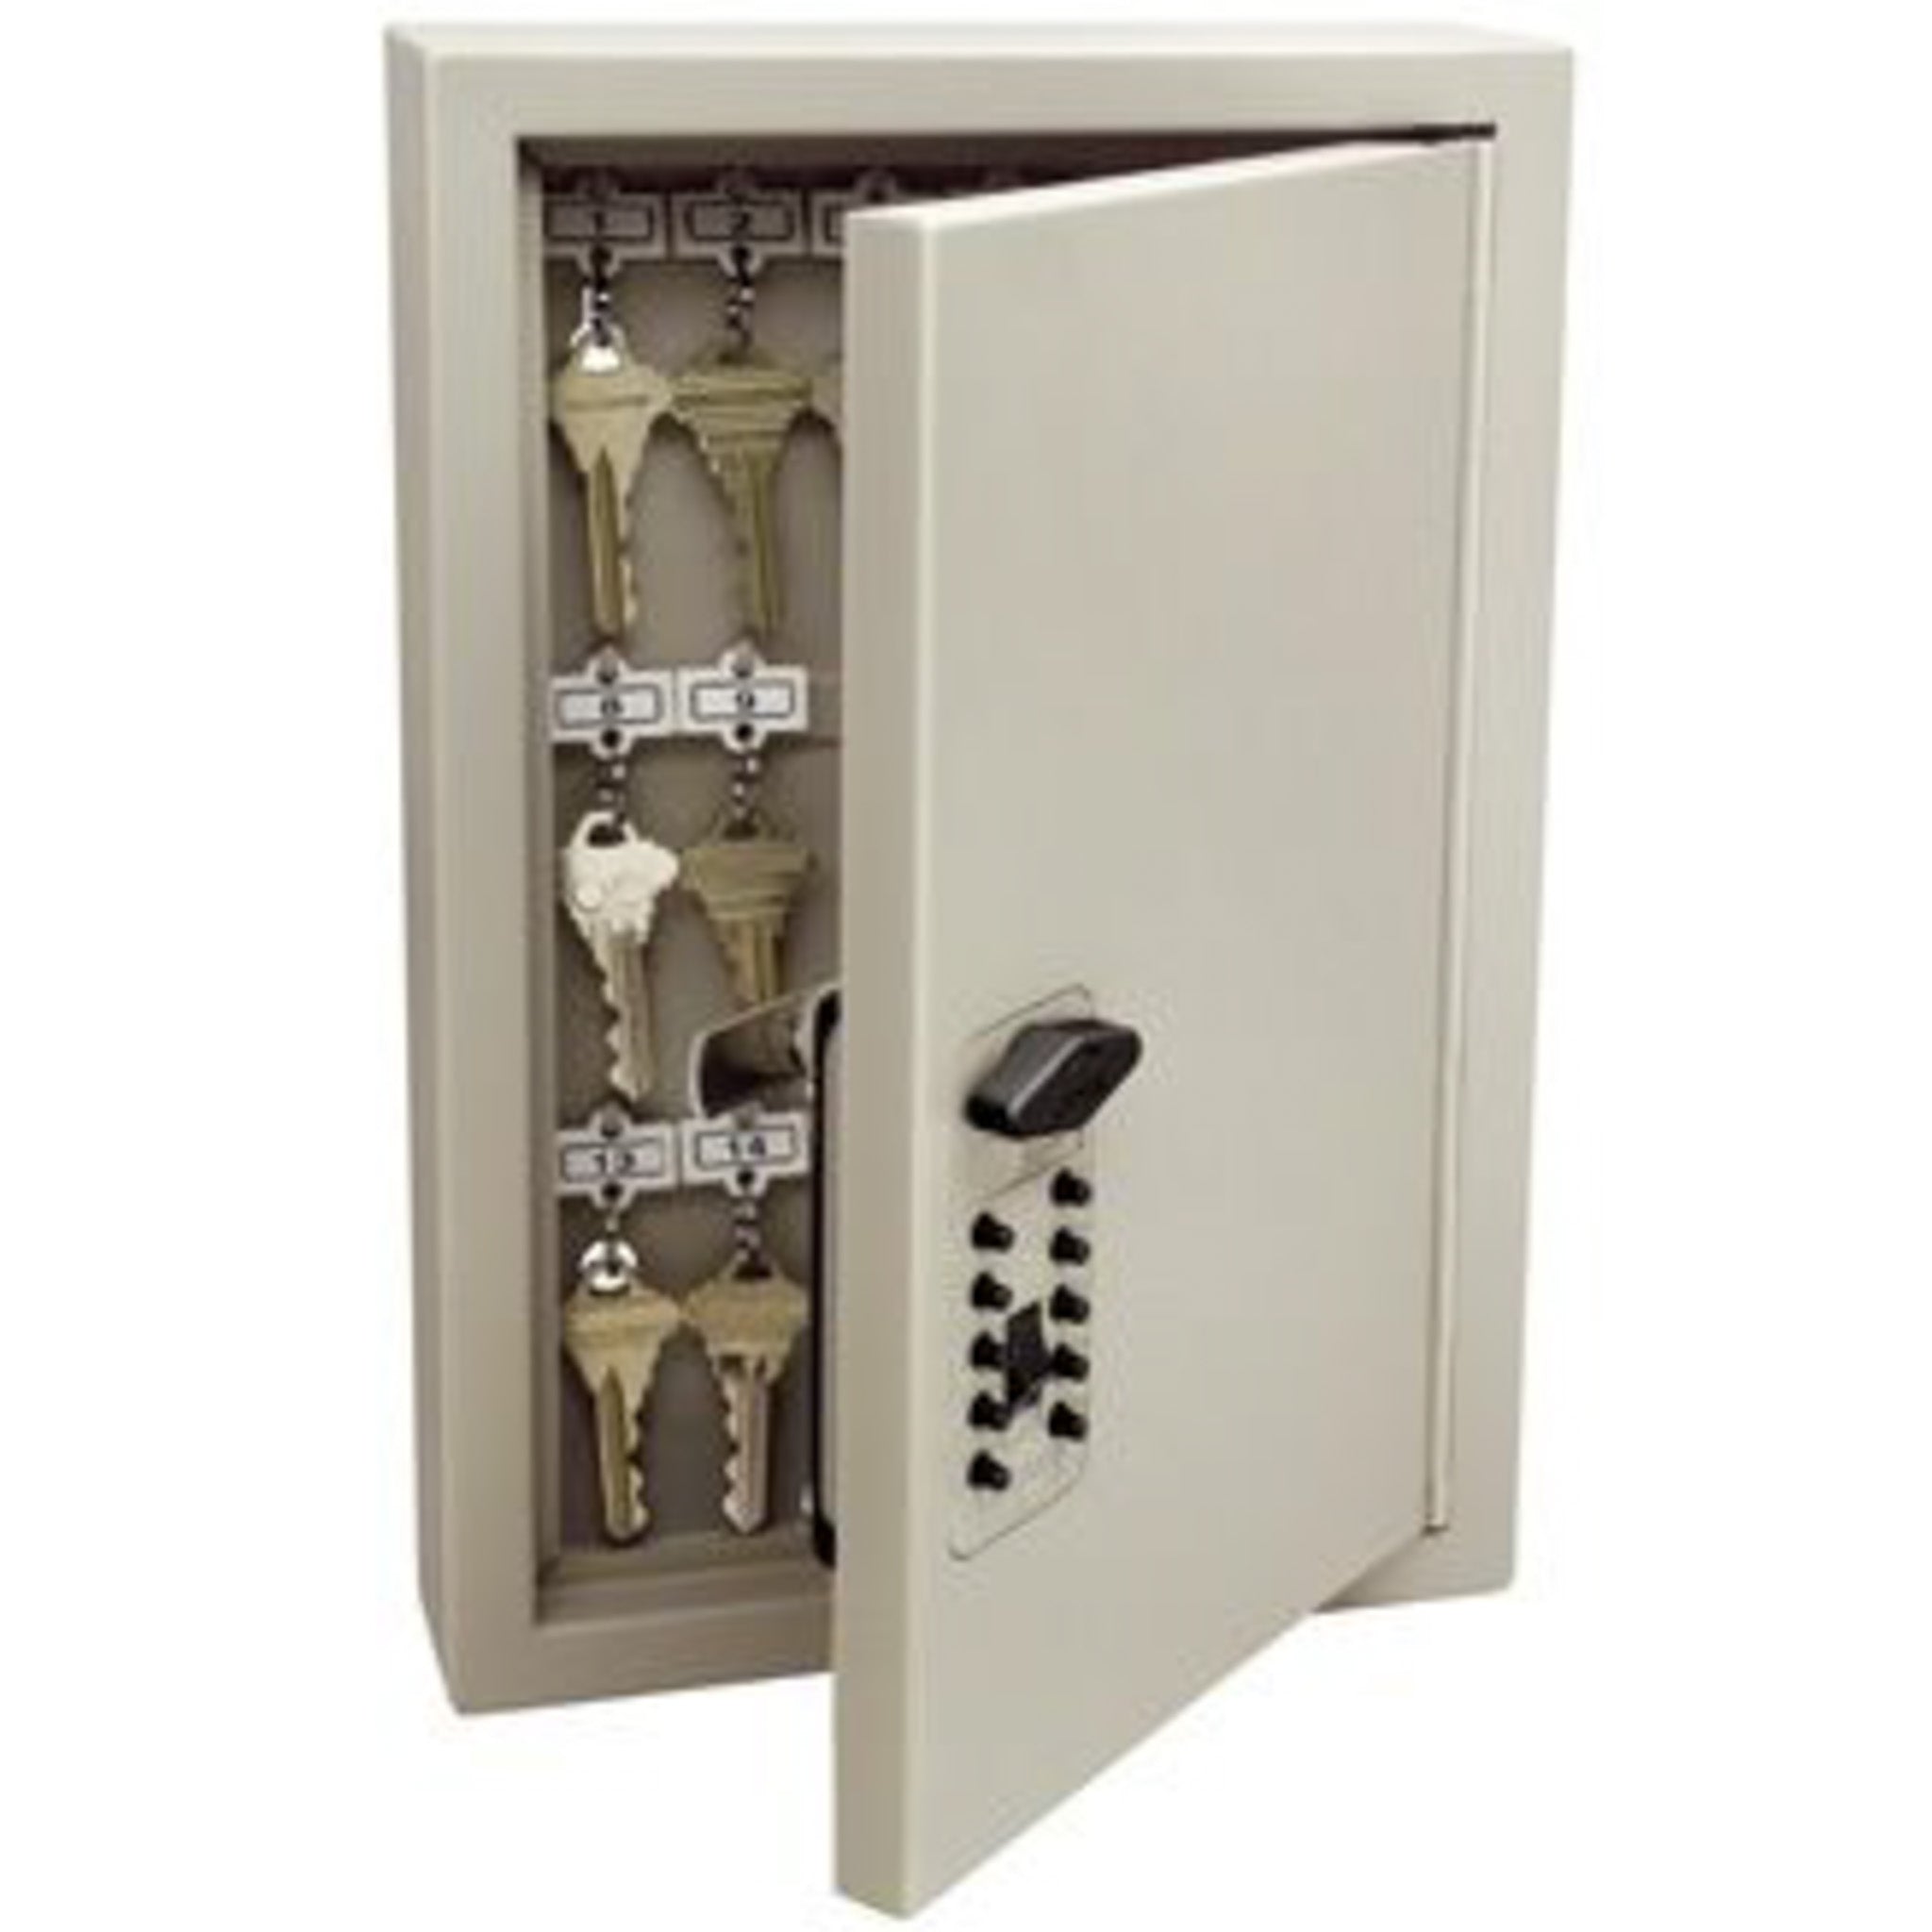 Open Kidde combination lock key cabinet showing key hooks for capacity of 30 keys